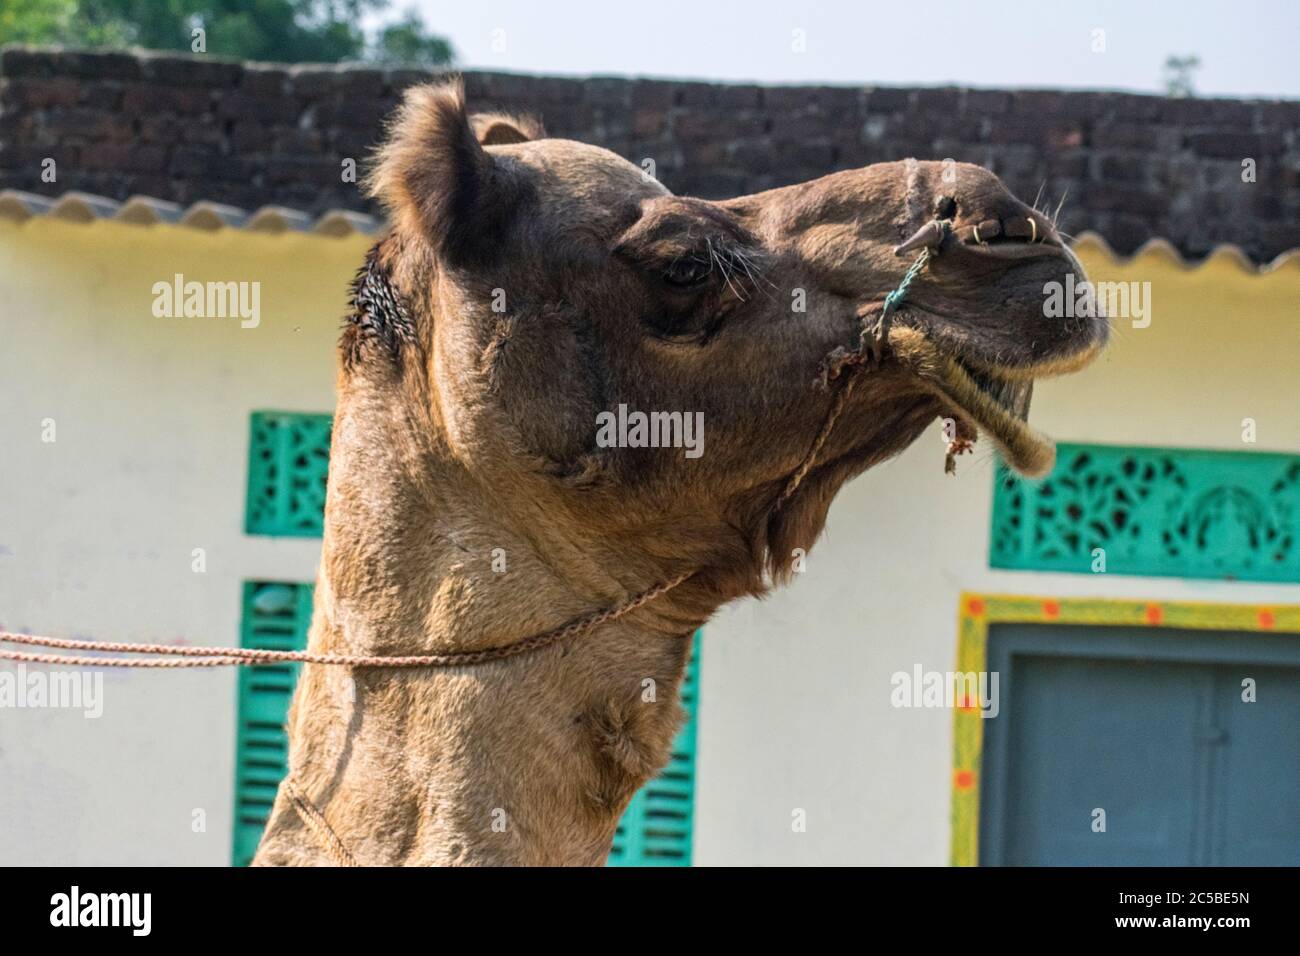 Das Kamel ist Teil der Landschaft von Rajasthan; die Ikone der Wüste Staat, Teil seiner kulturellen Identität, und ein wirtschaftlich wichtiges Tier für Stockfoto